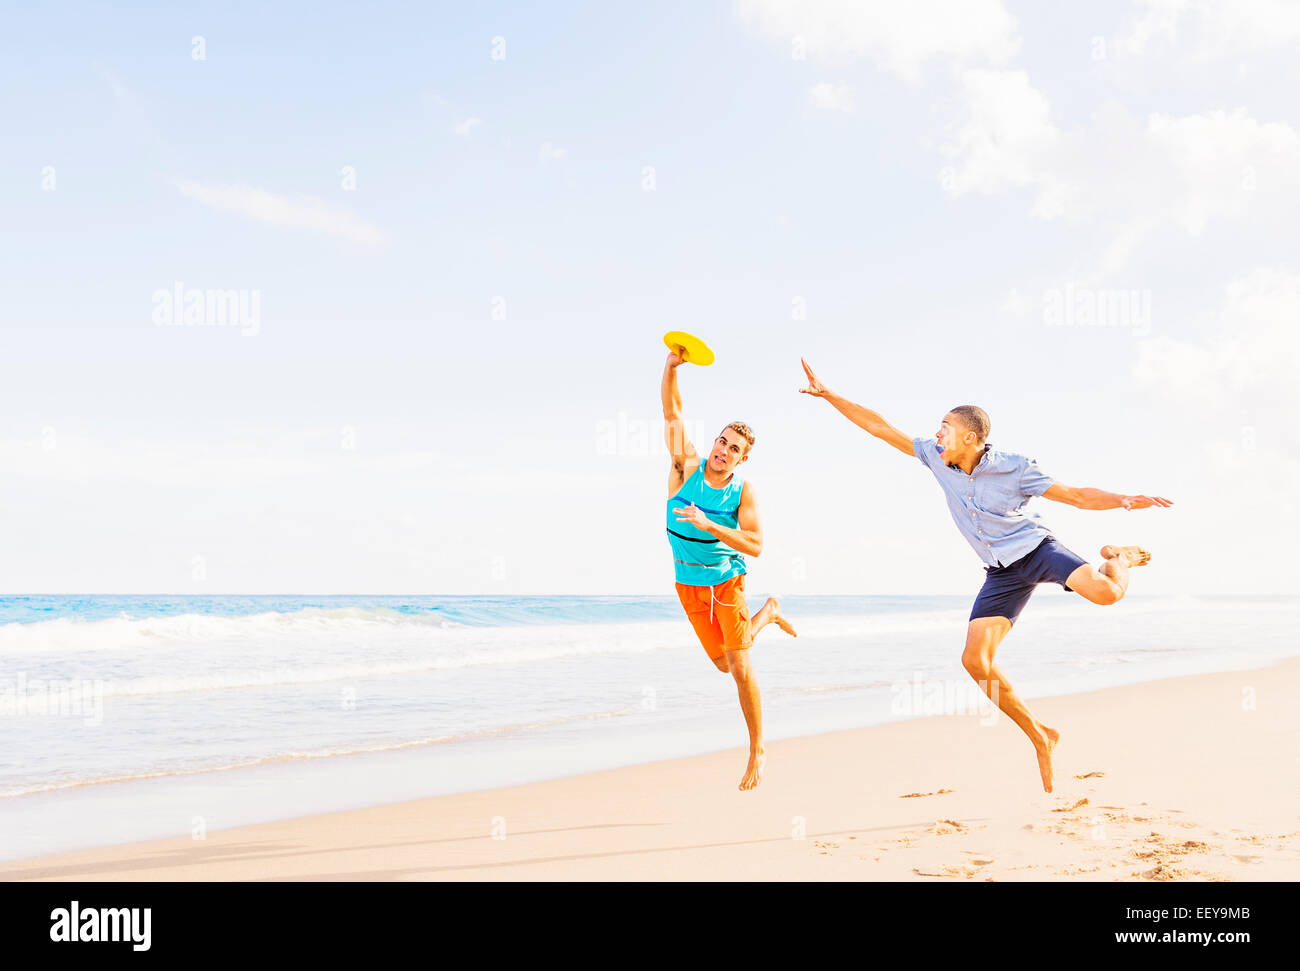 USA, Florida, Jupiter, junge Männer spielen Kunststoffscheibe am Strand Stockfoto